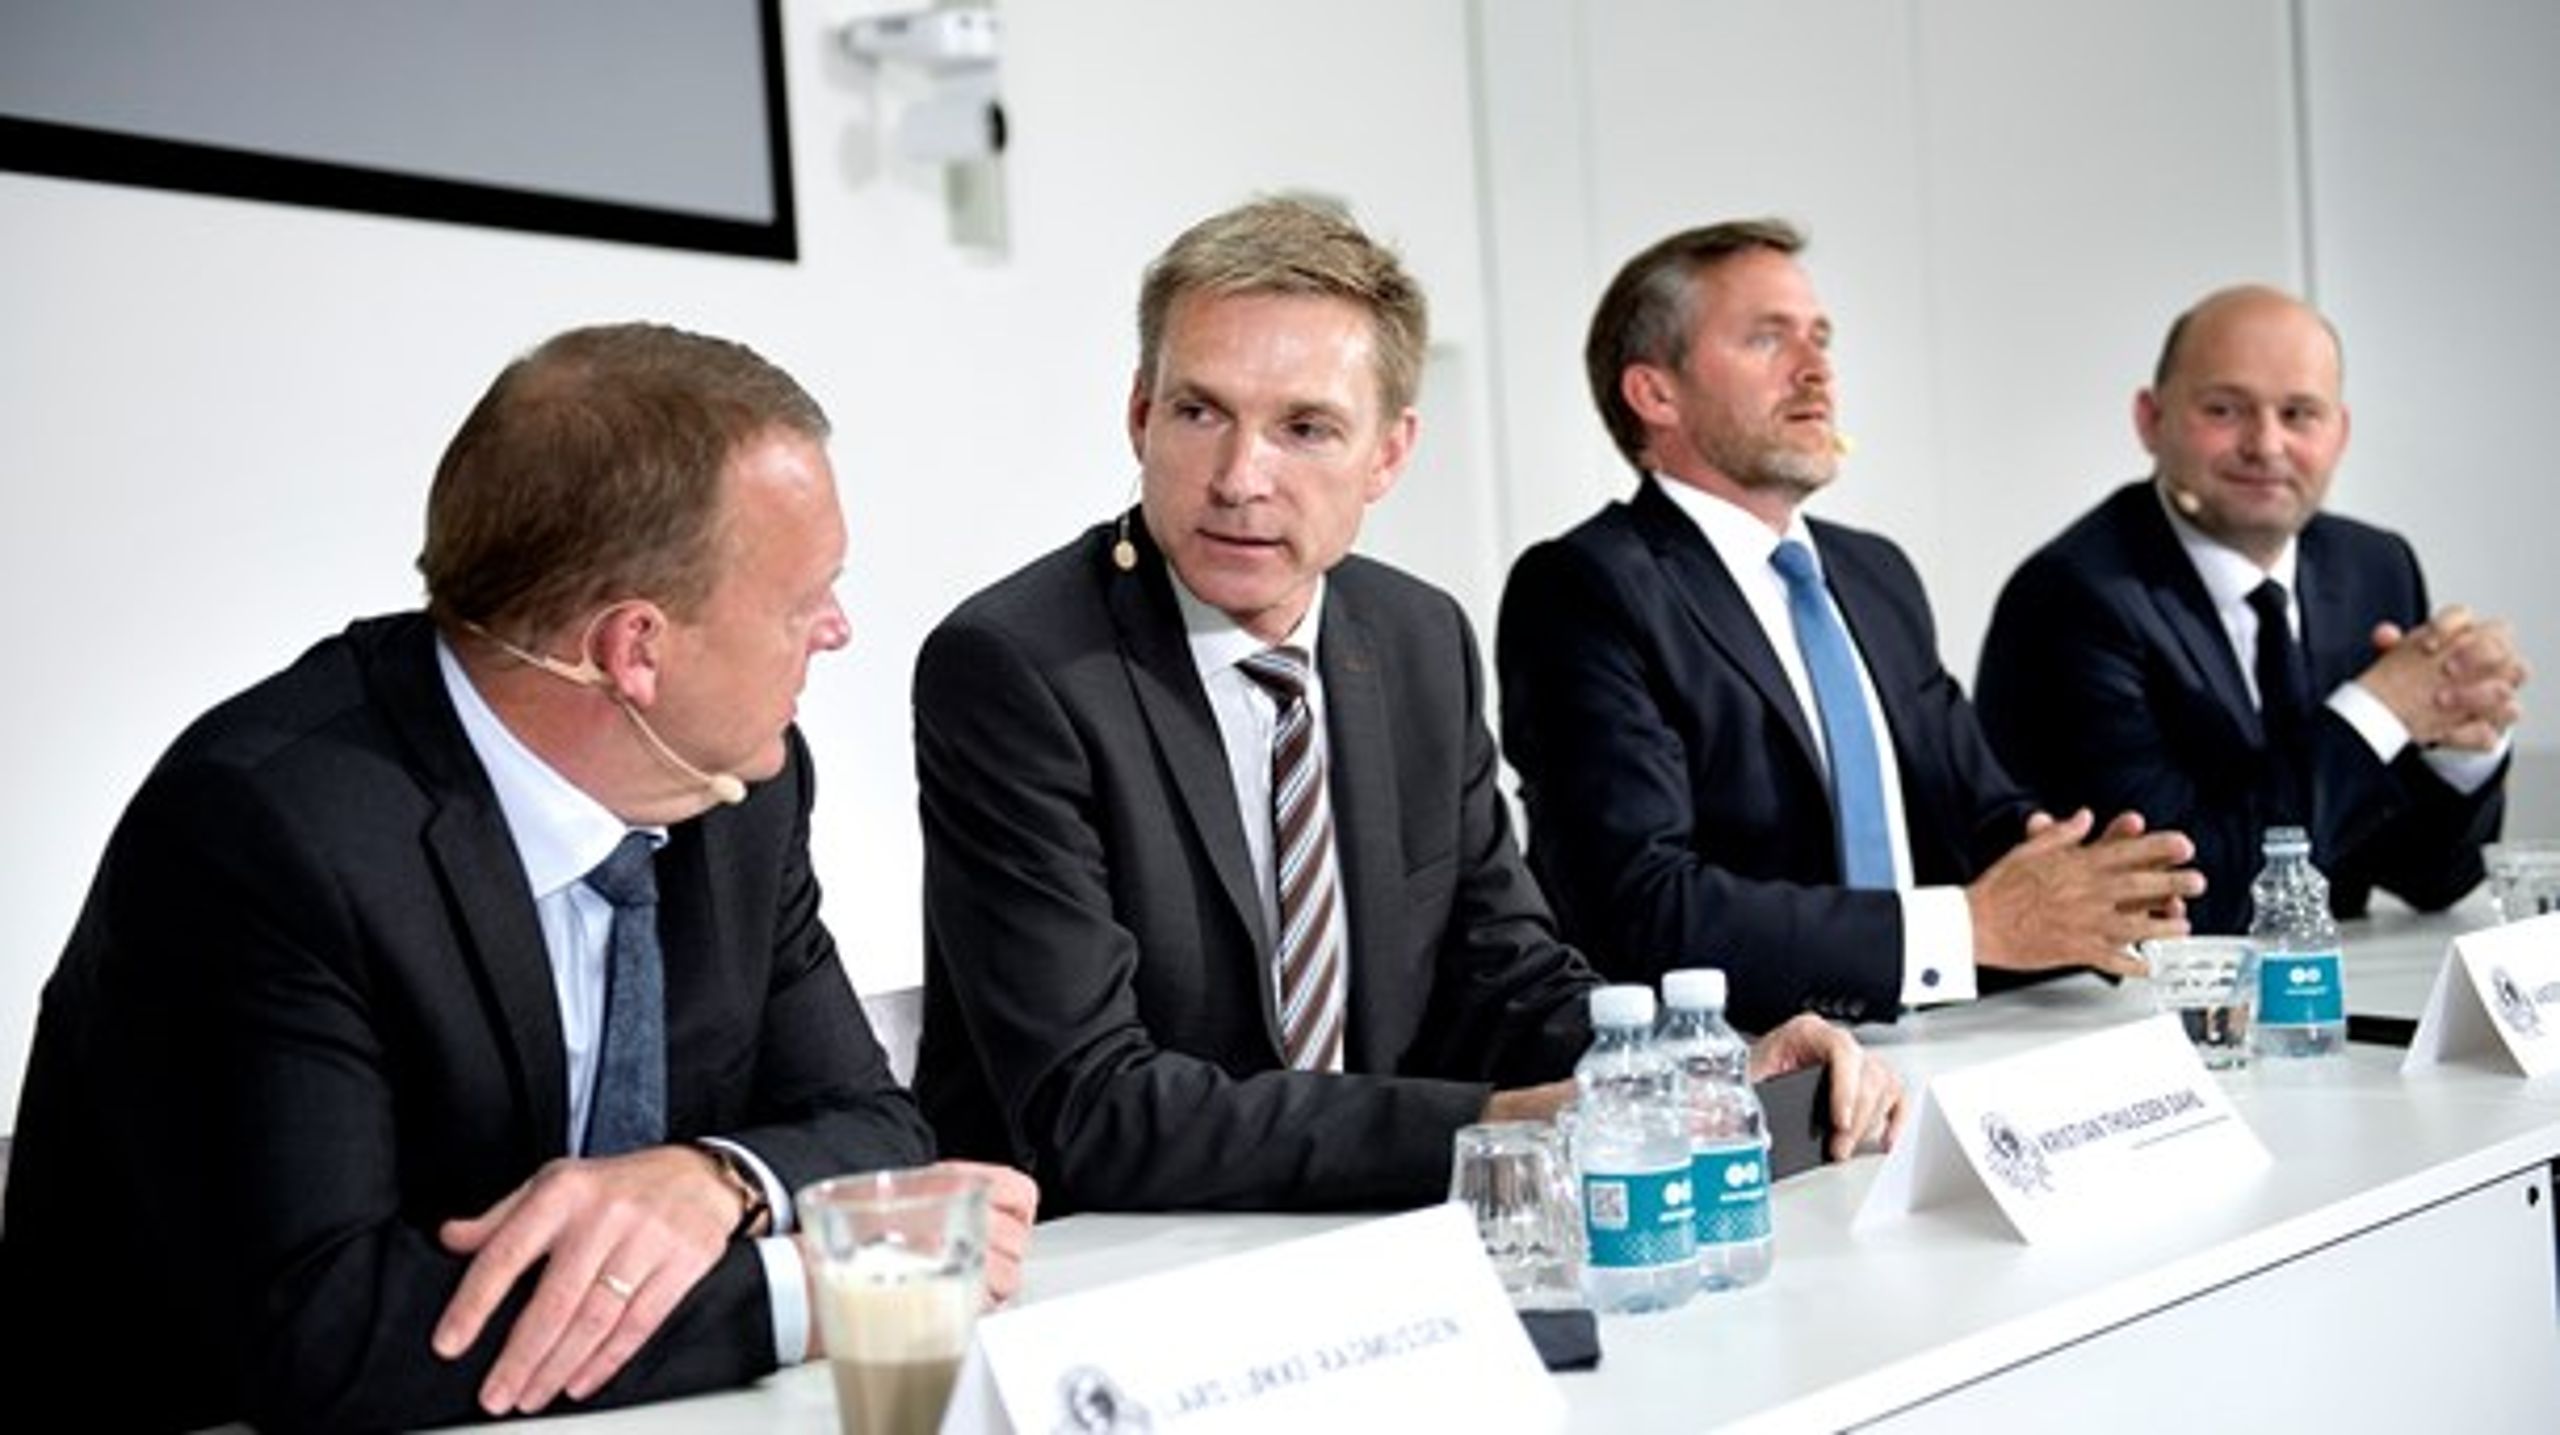 De nye væksttal fjerner behovet for nye drastiske reformer, mener DF-formand Kristian Thulesen Dahl.